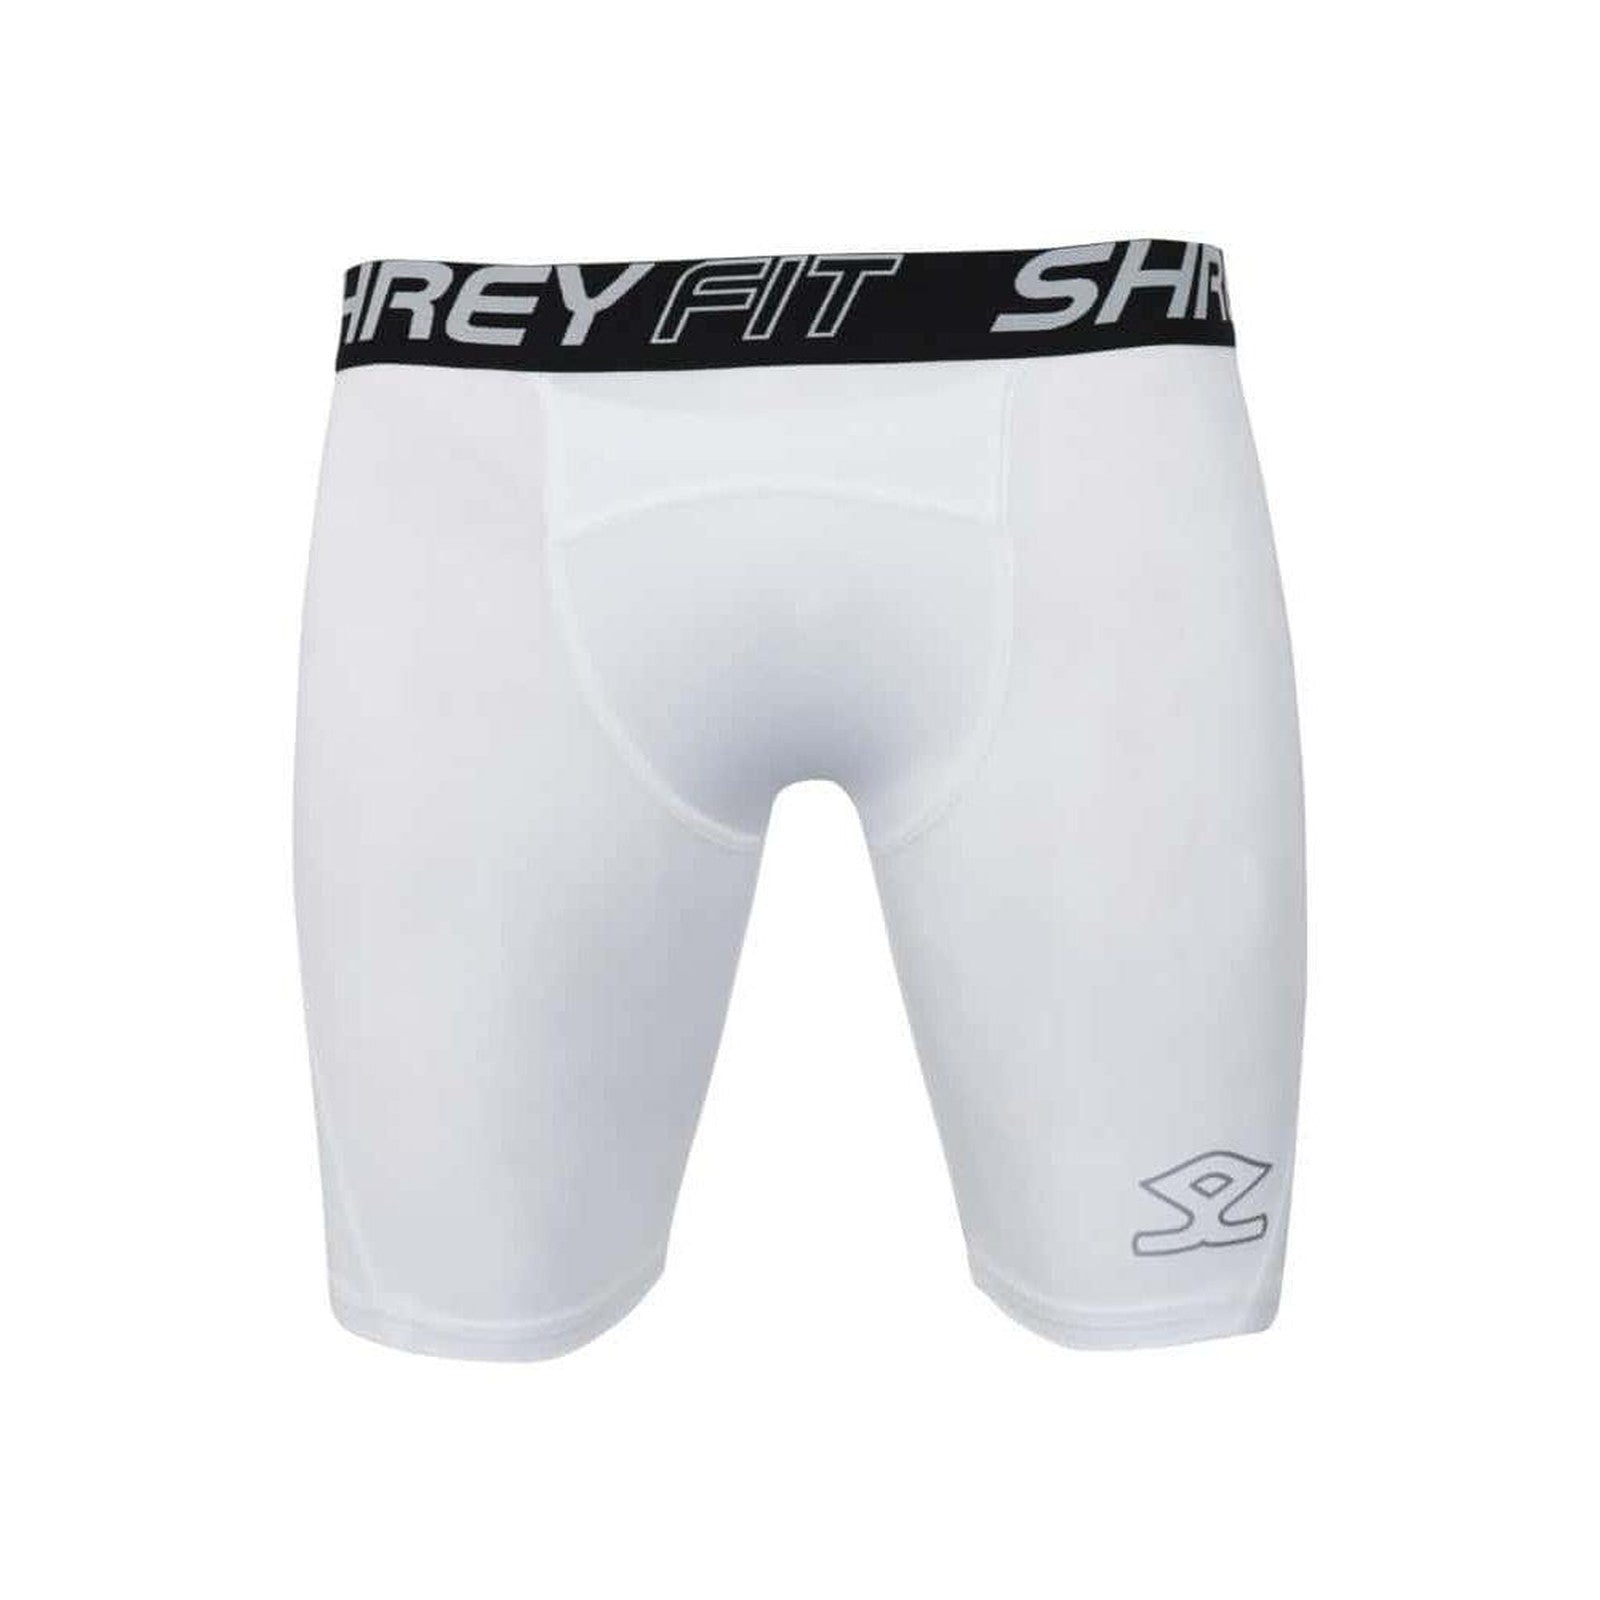 Shrey Intense Baselayer Shorts - White